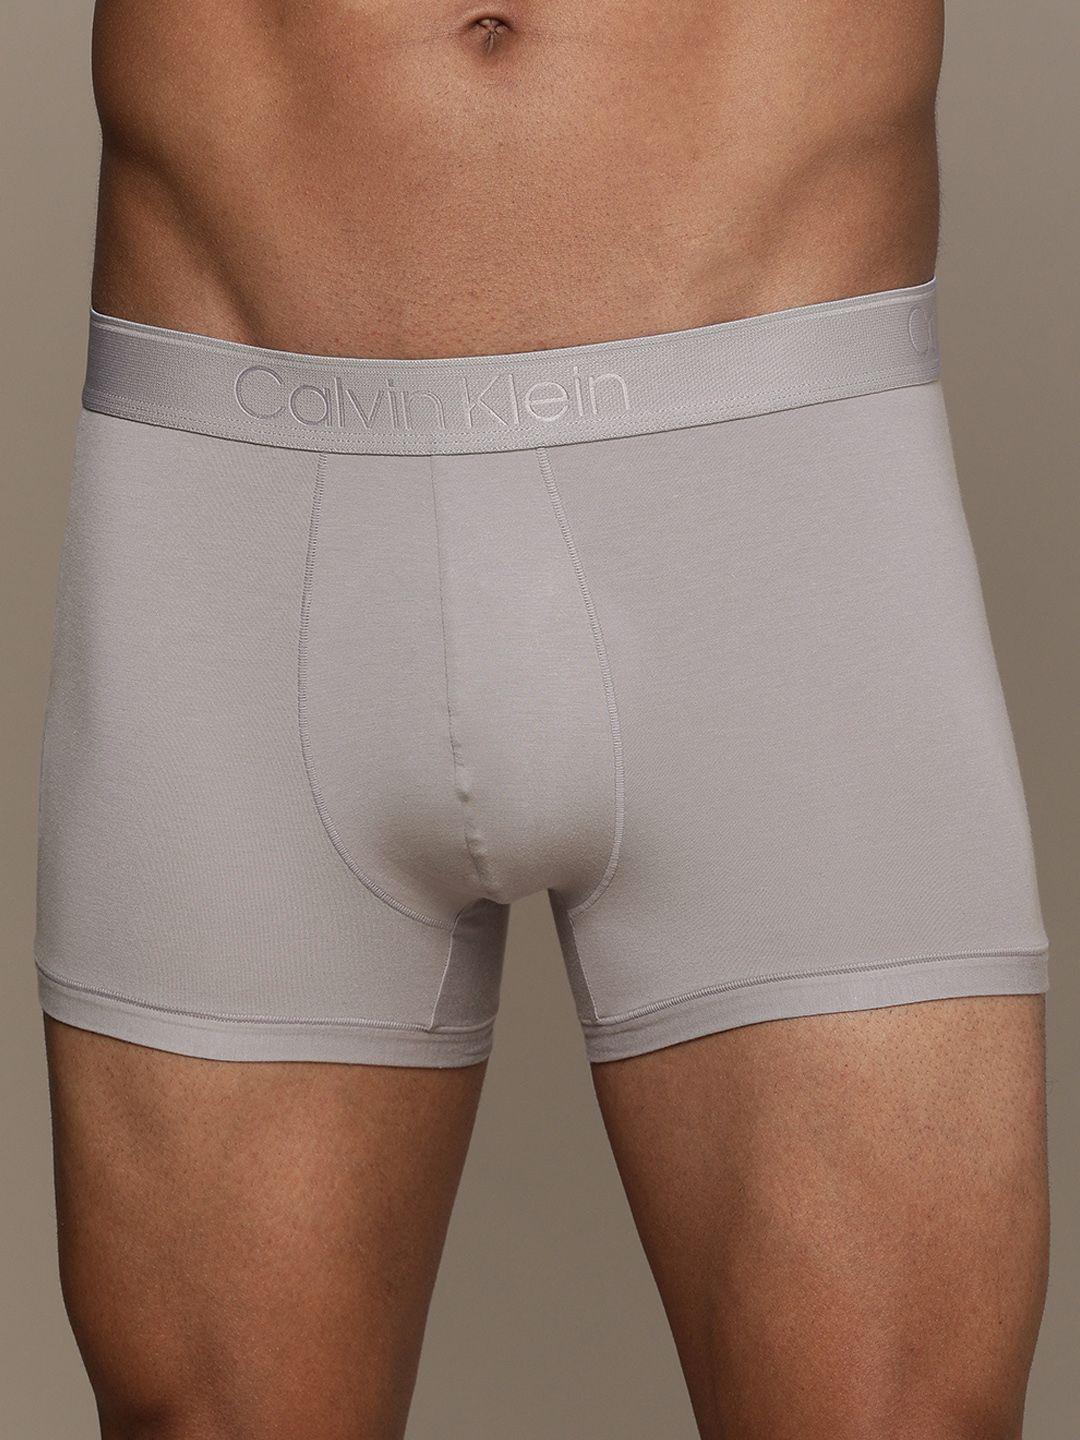 calvin klein underwear men grey solid trunks